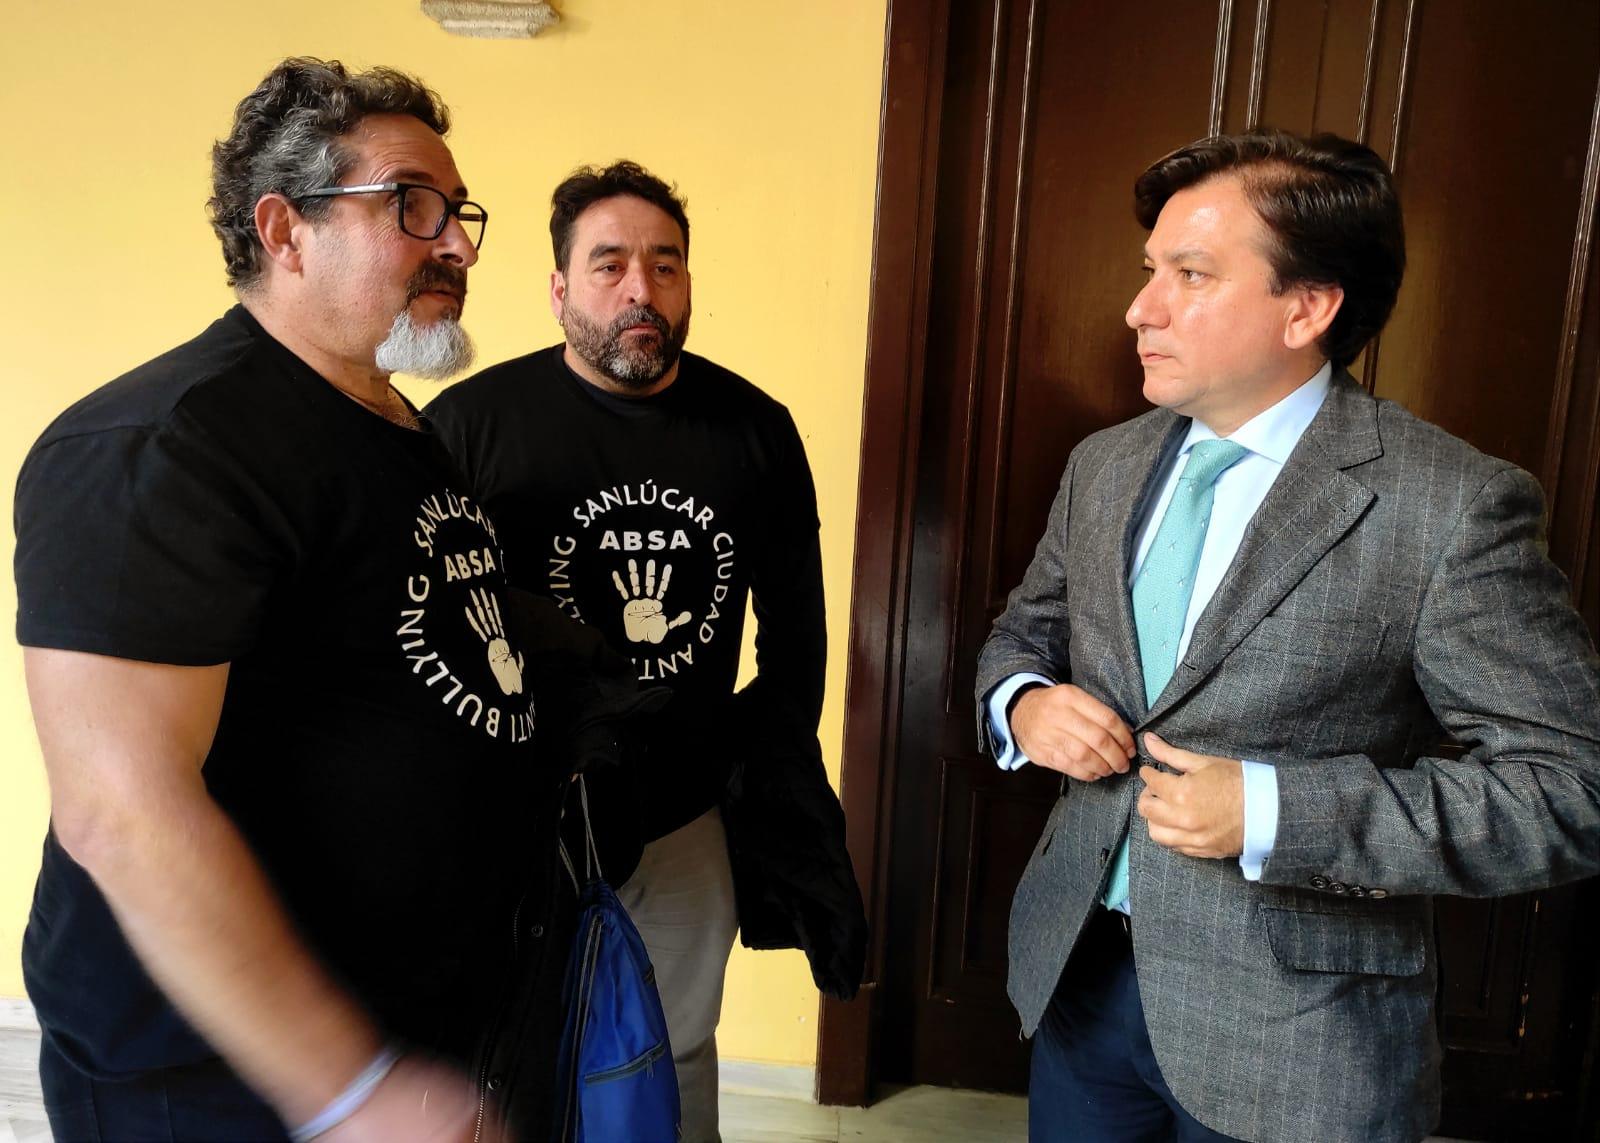 Jerez es declarada "Ciudad Antibullying" a propuesta de Vox